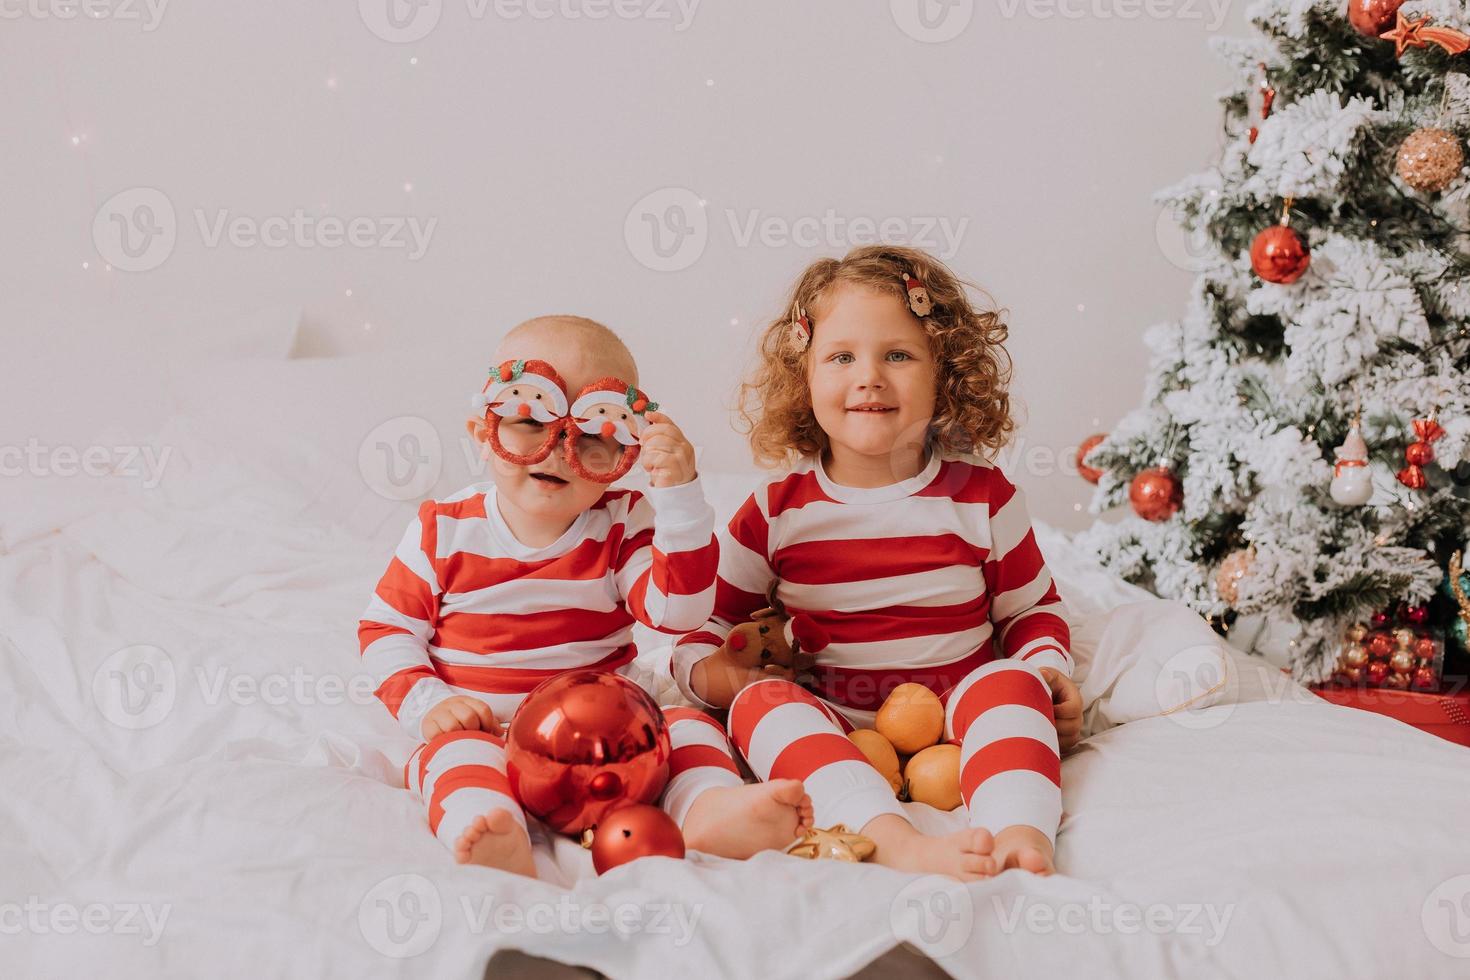 crianças de pijama vermelho e branco comem doces de natal sentados na cama. irmão e irmã, menino e menina compartilham presentes. manha de Natal. estilo de vida. espaço para texto. foto de alta qualidade